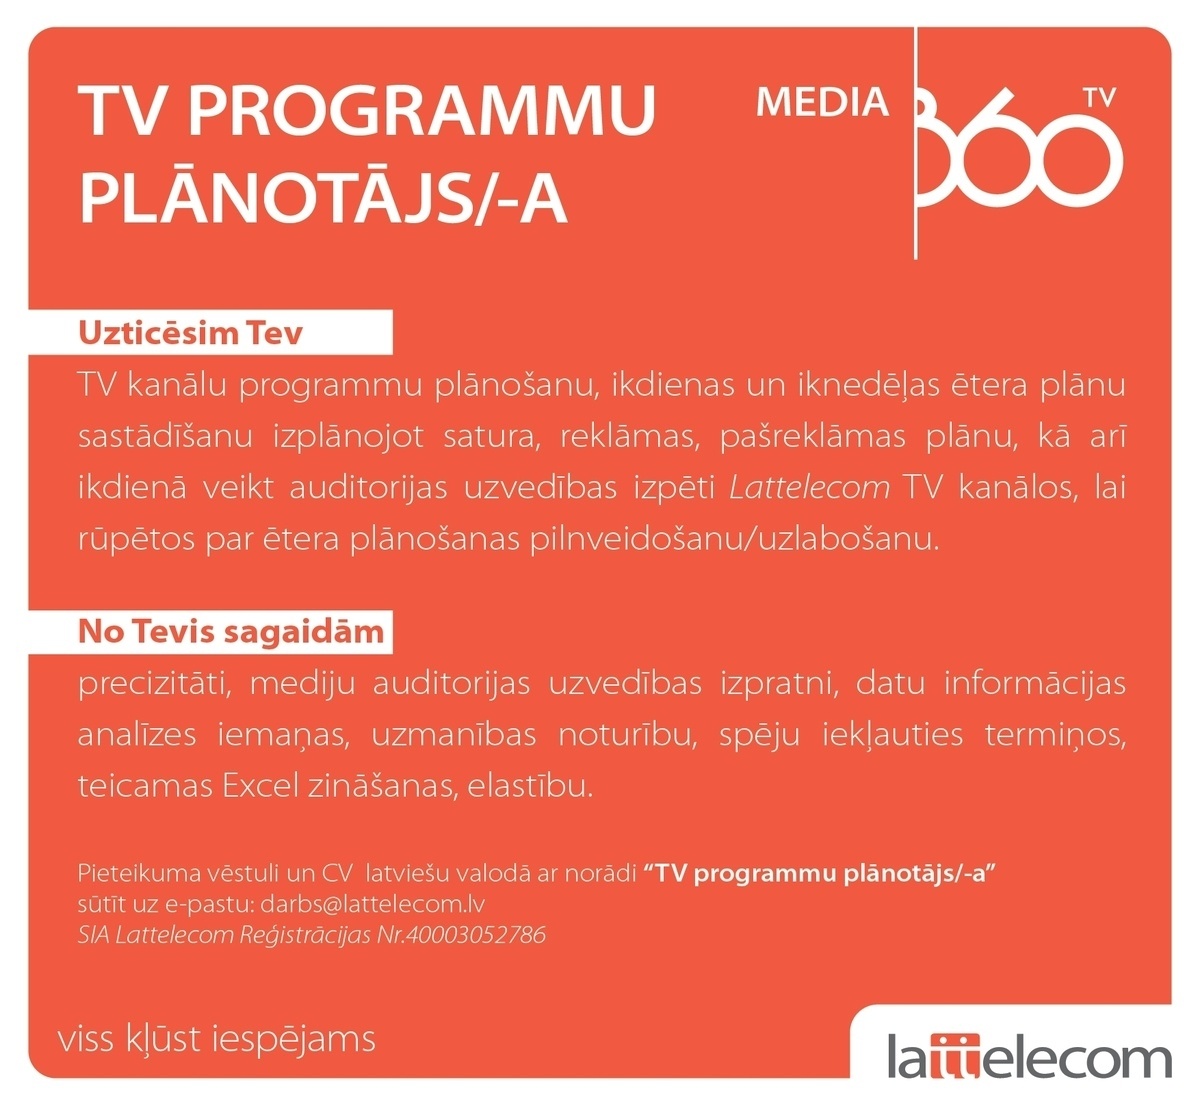 Lattelecom, SIA TV programmu plānotājs/-a